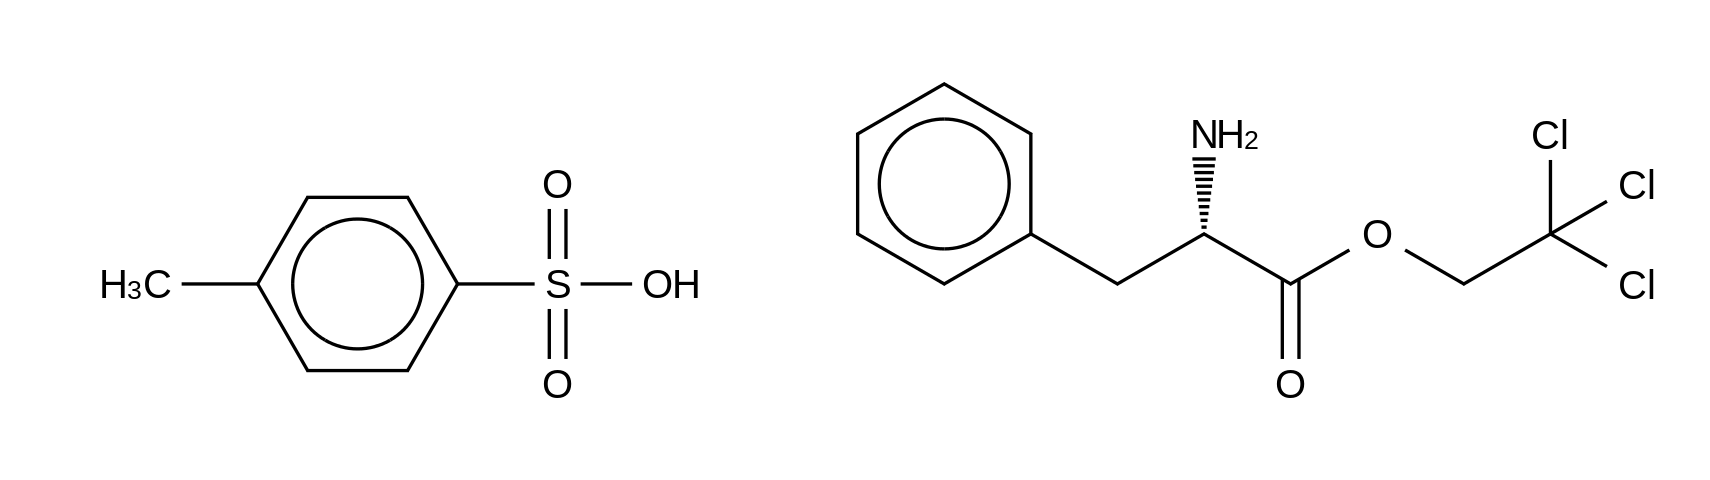 4-Methylbenzenesulfonate L-Phenylalanine 2,2,2-Trichloroethyl Ester